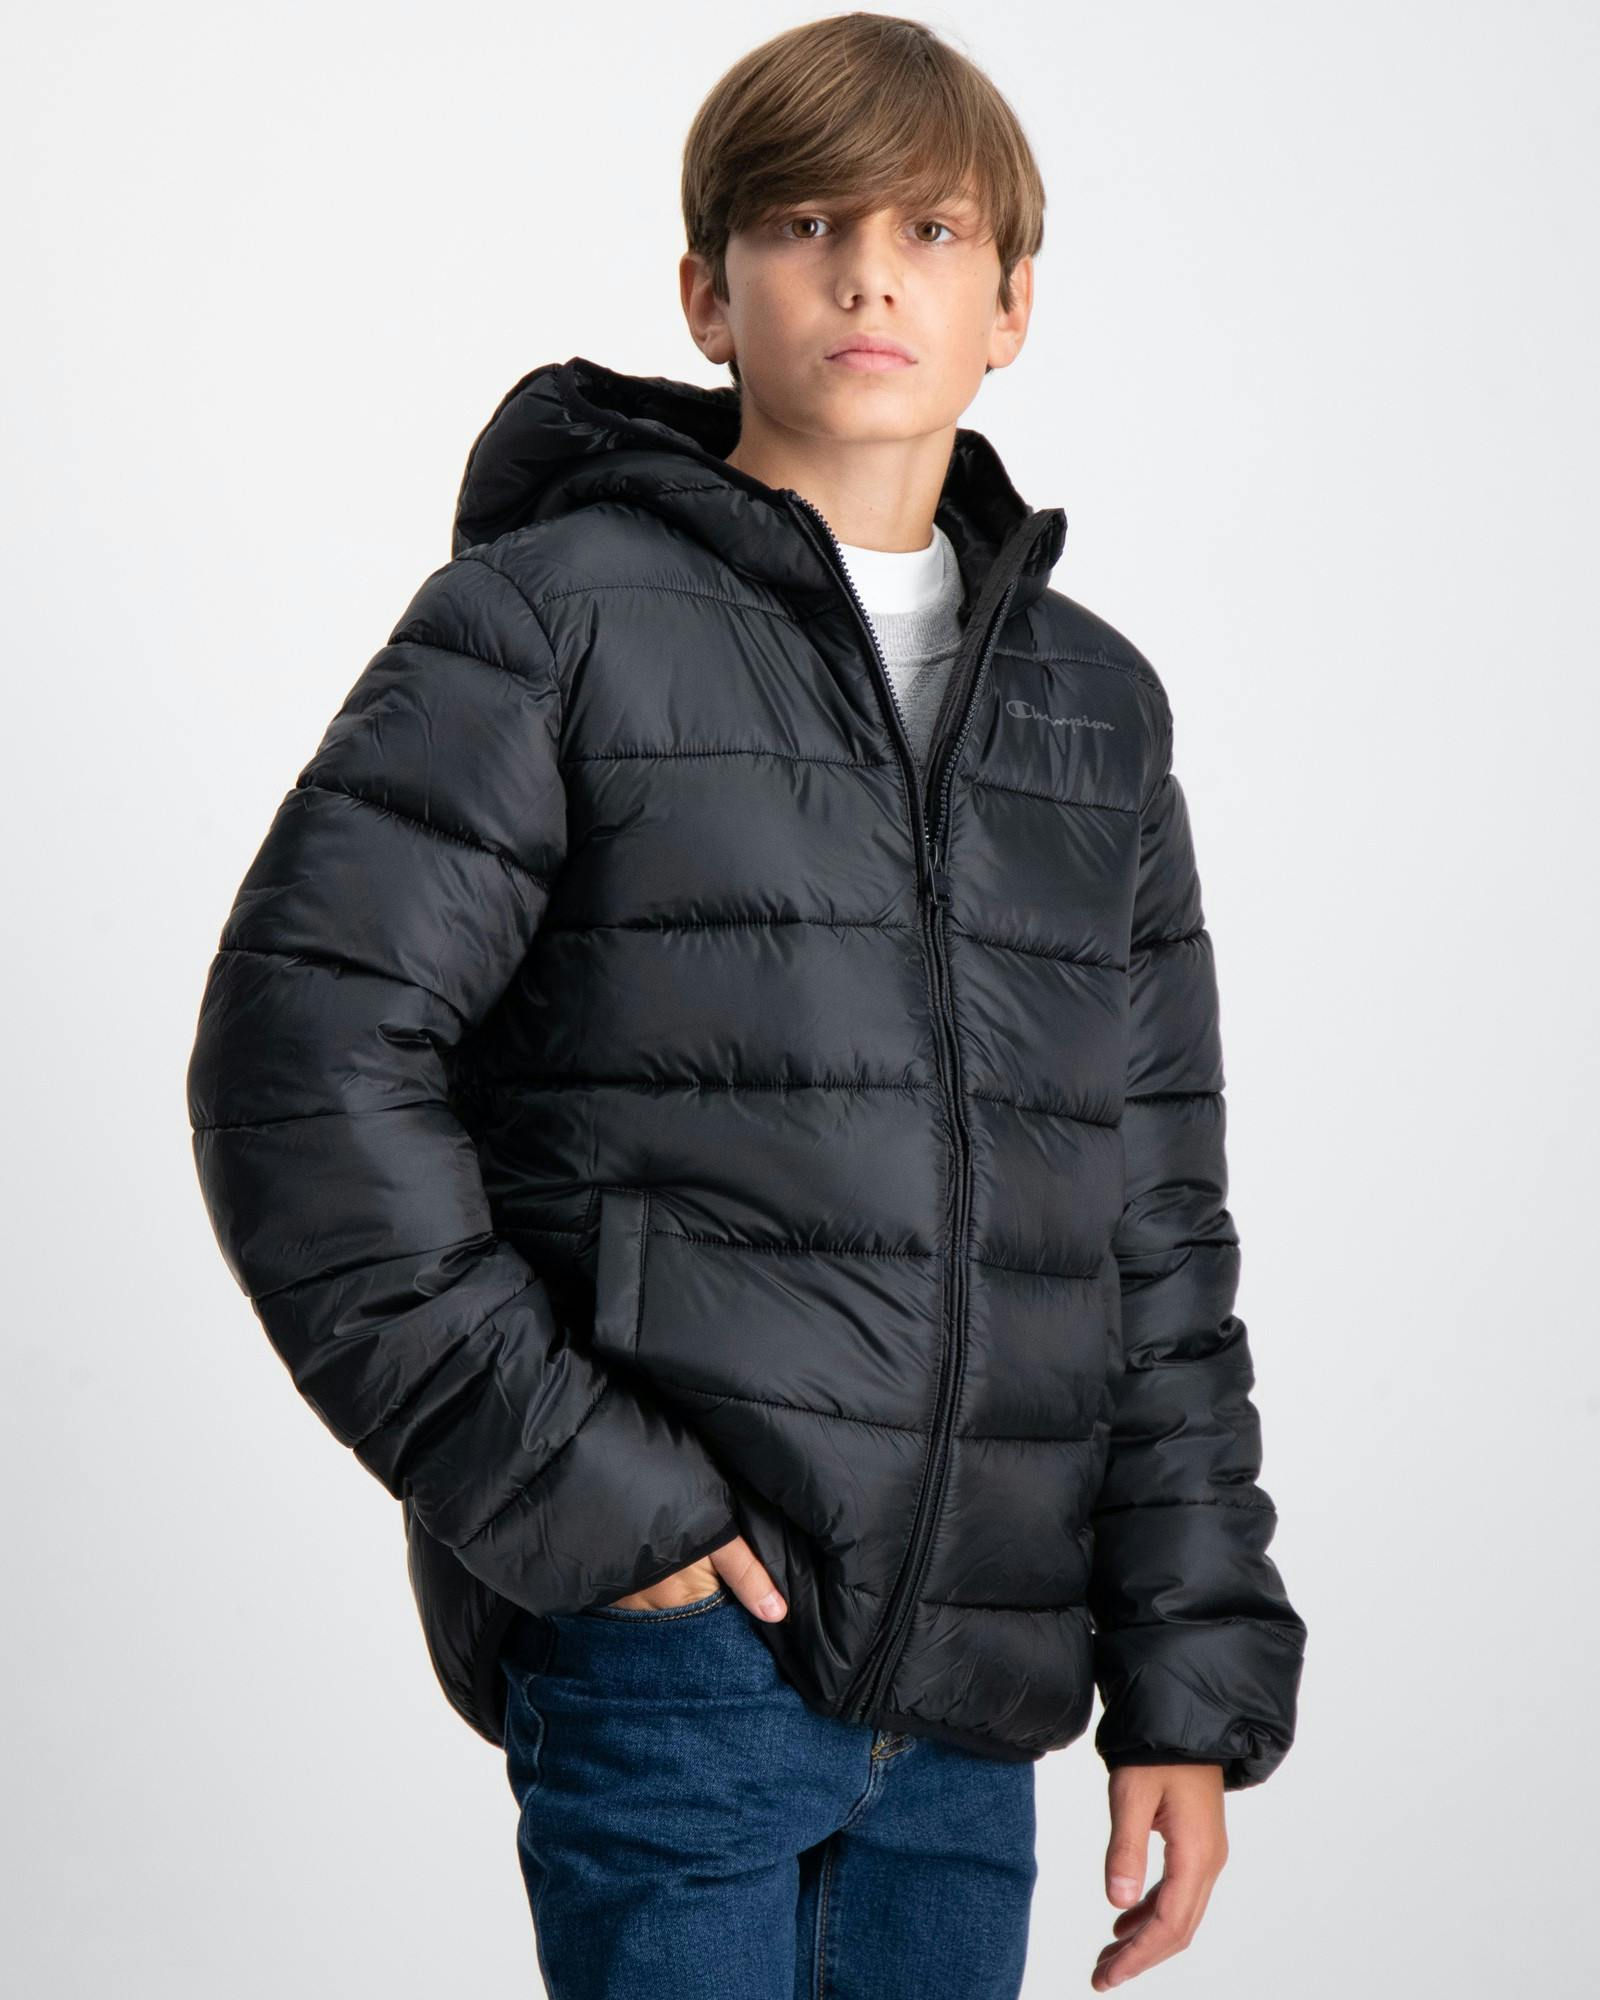 Schwarz Hooded Jacket für | Brand Kids Jungen Store